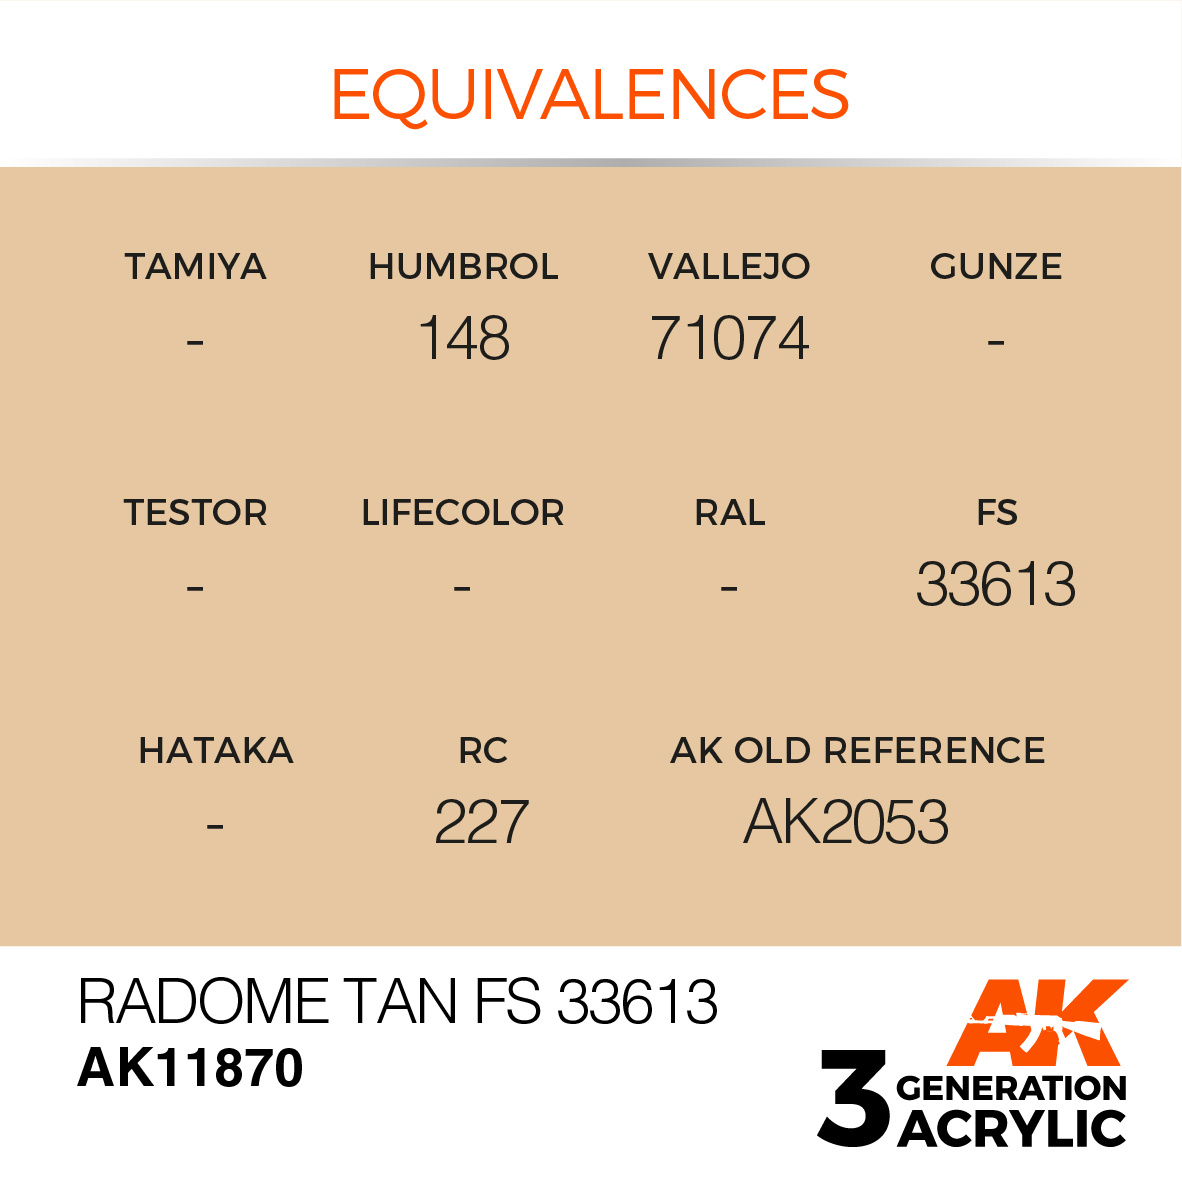 AK-Interactive Radome Tan FS 33613 - 17ml - AK-Interactive - AK-11870